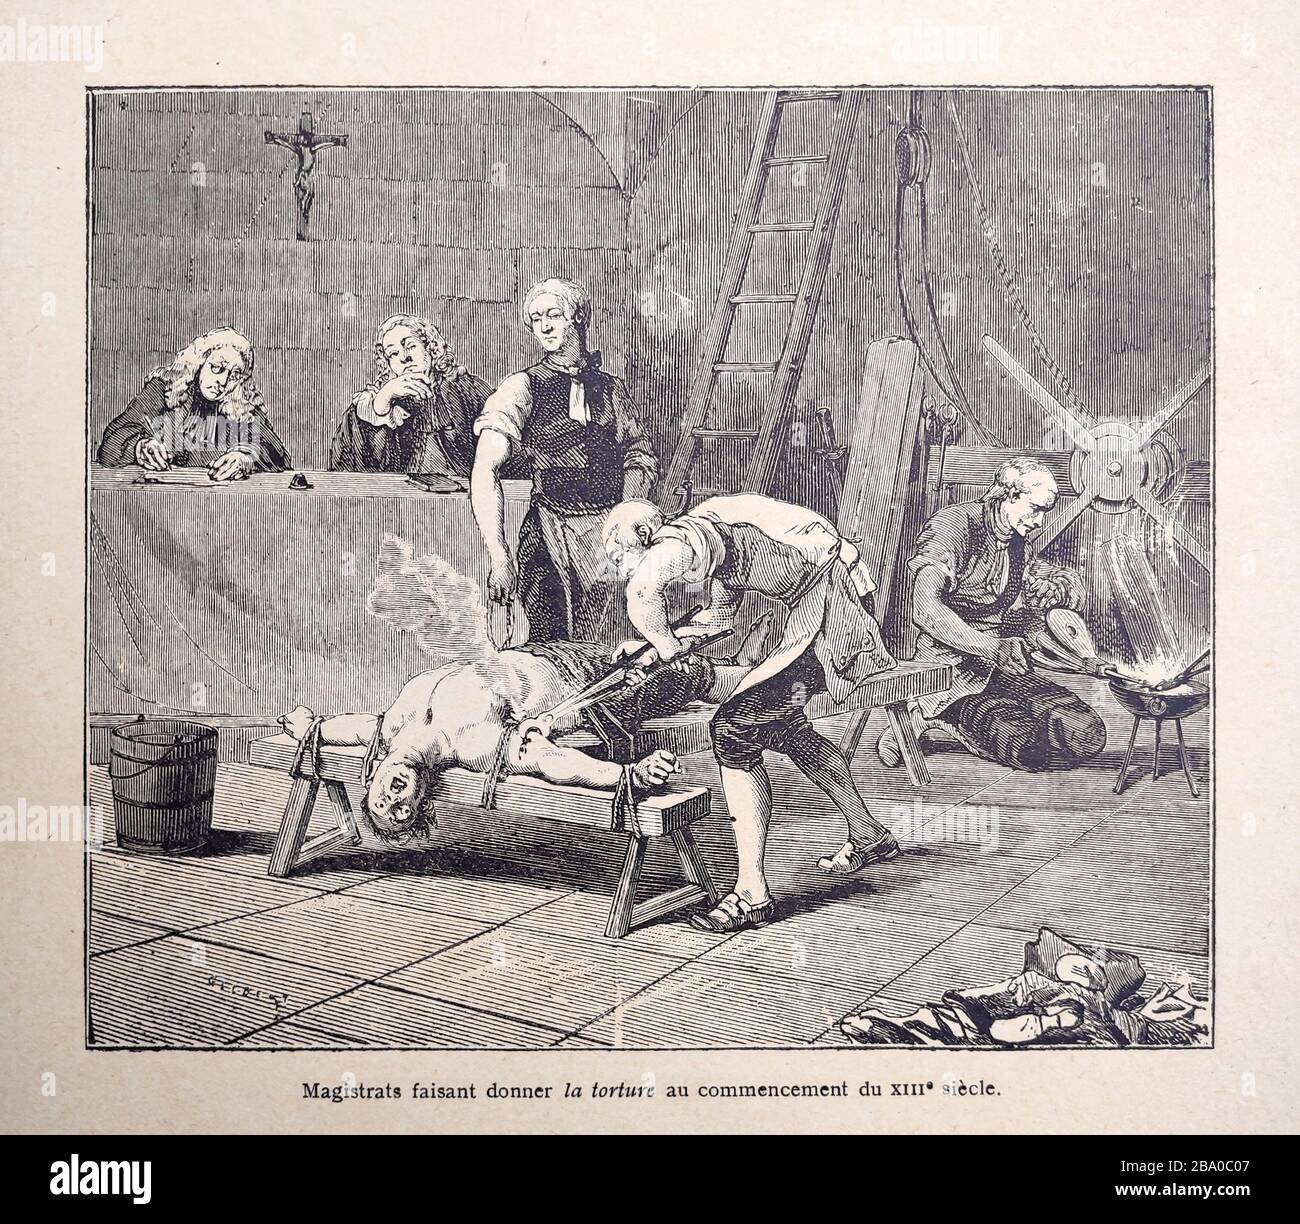 Ilustración de una tortura en el siglo 13 por Gilbert publicado a finales del siglo 19. Foto de stock